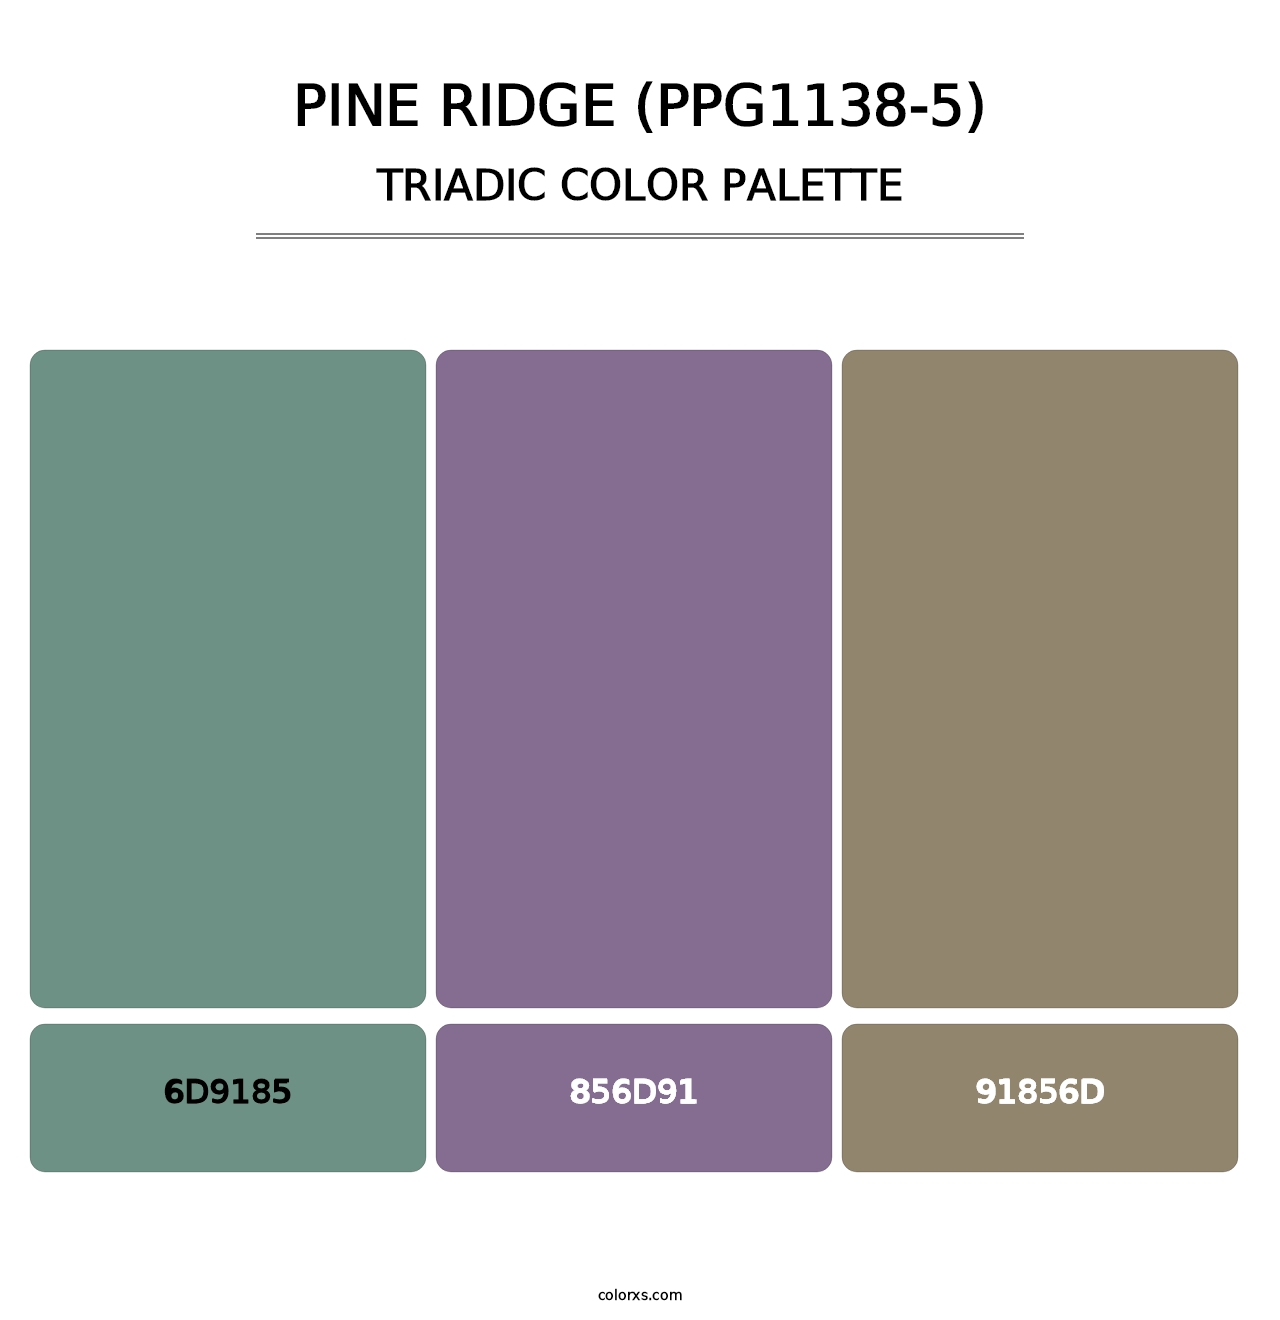 Pine Ridge (PPG1138-5) - Triadic Color Palette